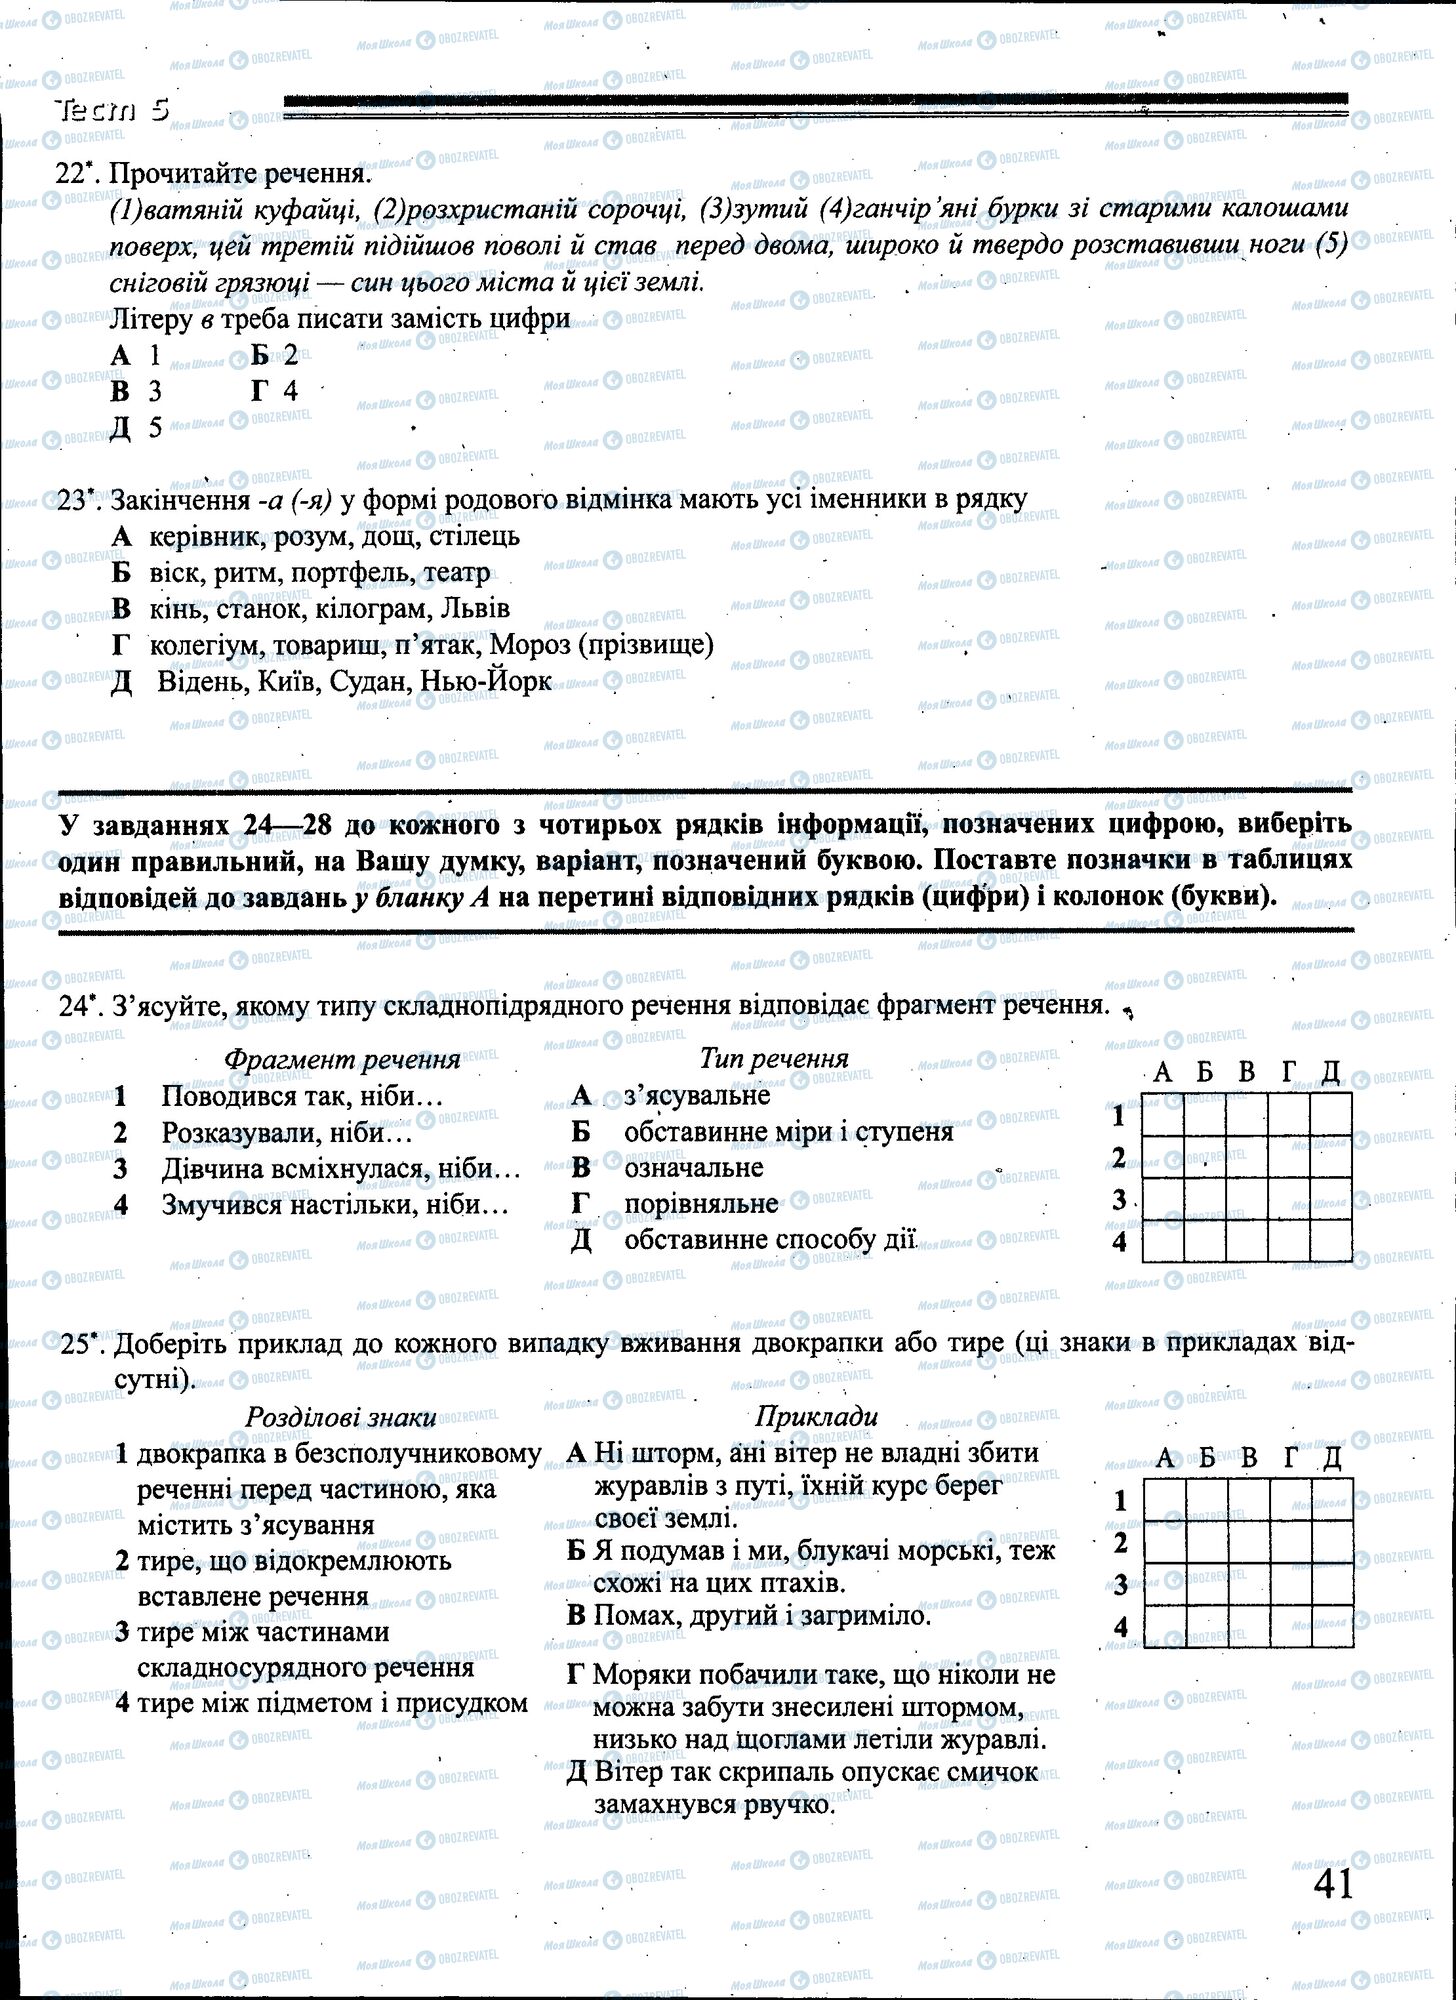 ЗНО Укр мова 11 класс страница 041